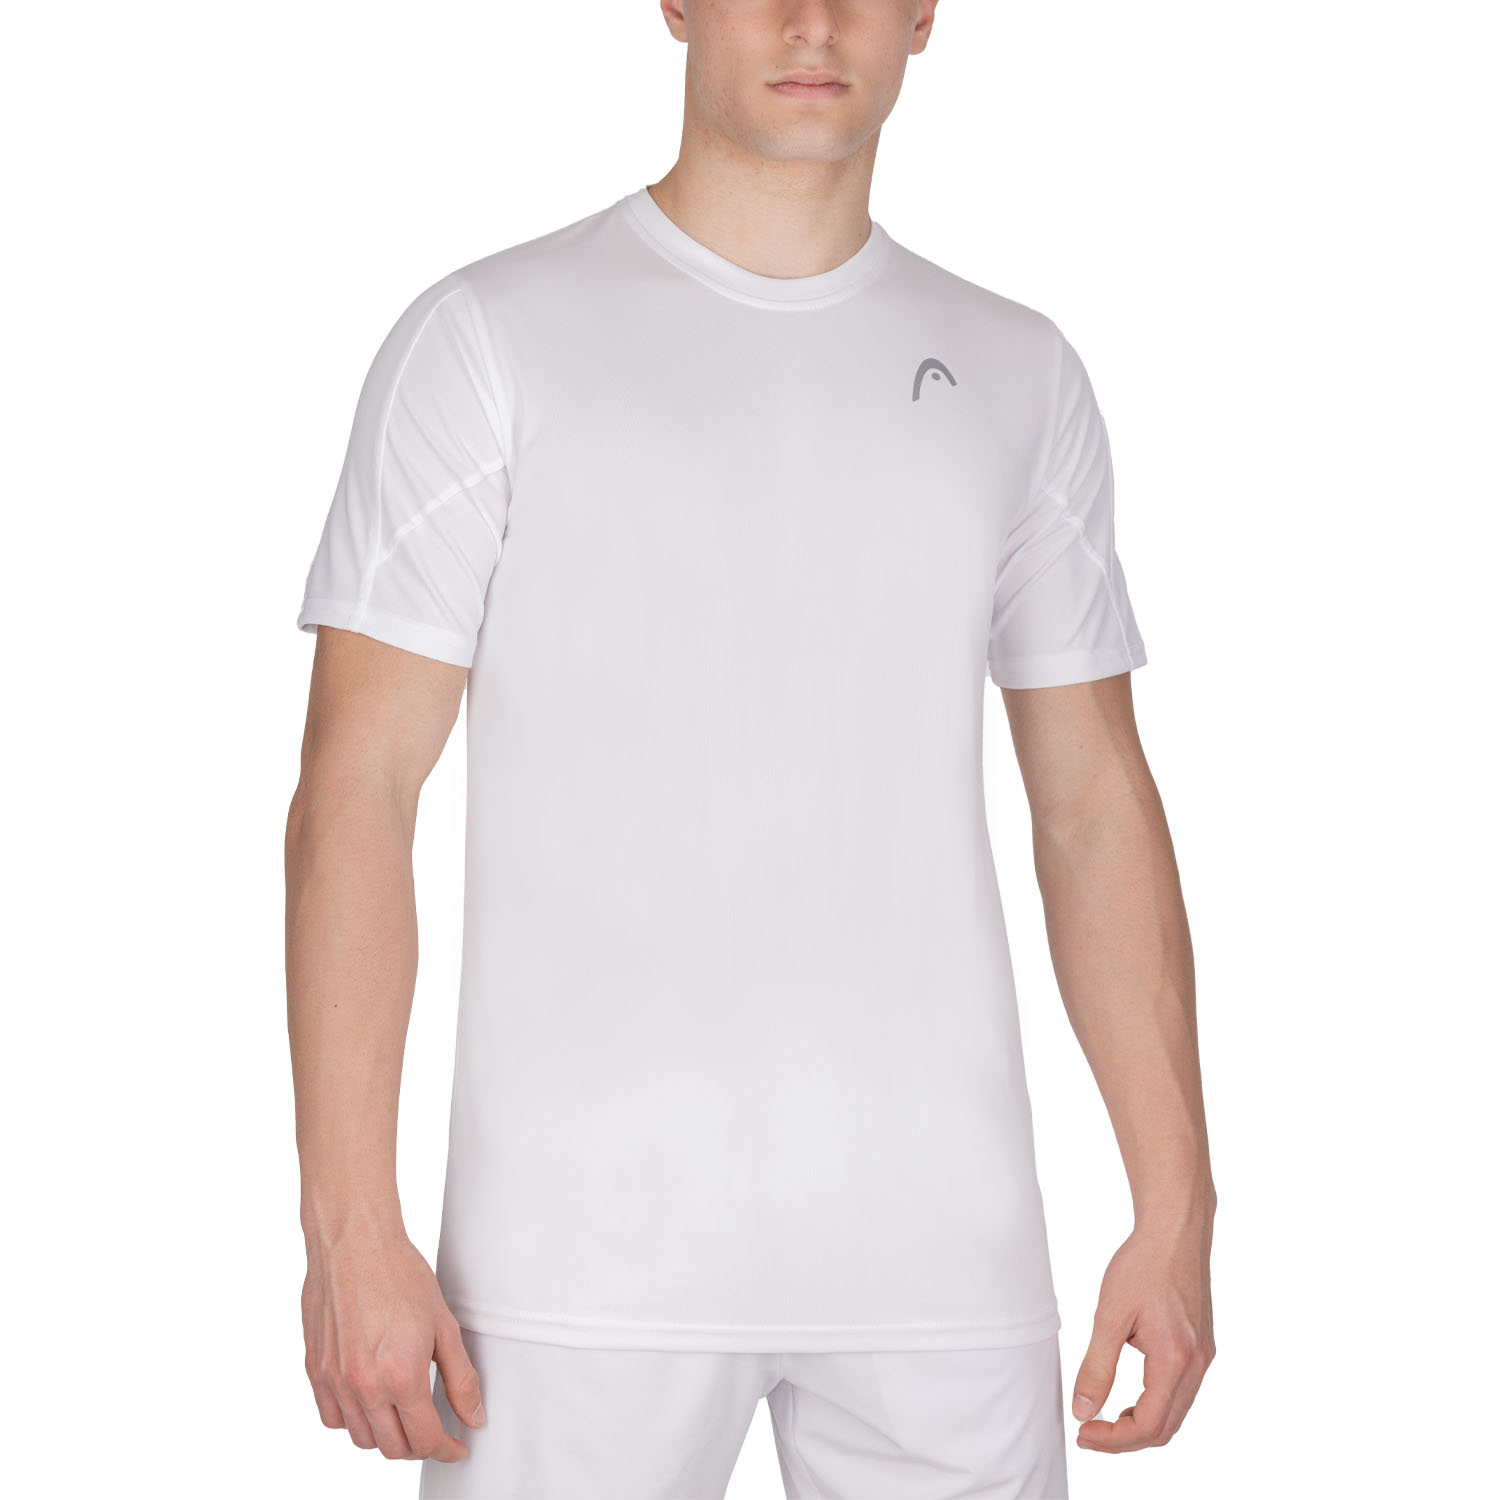 Head Club 22 Tech T-Shirt - White